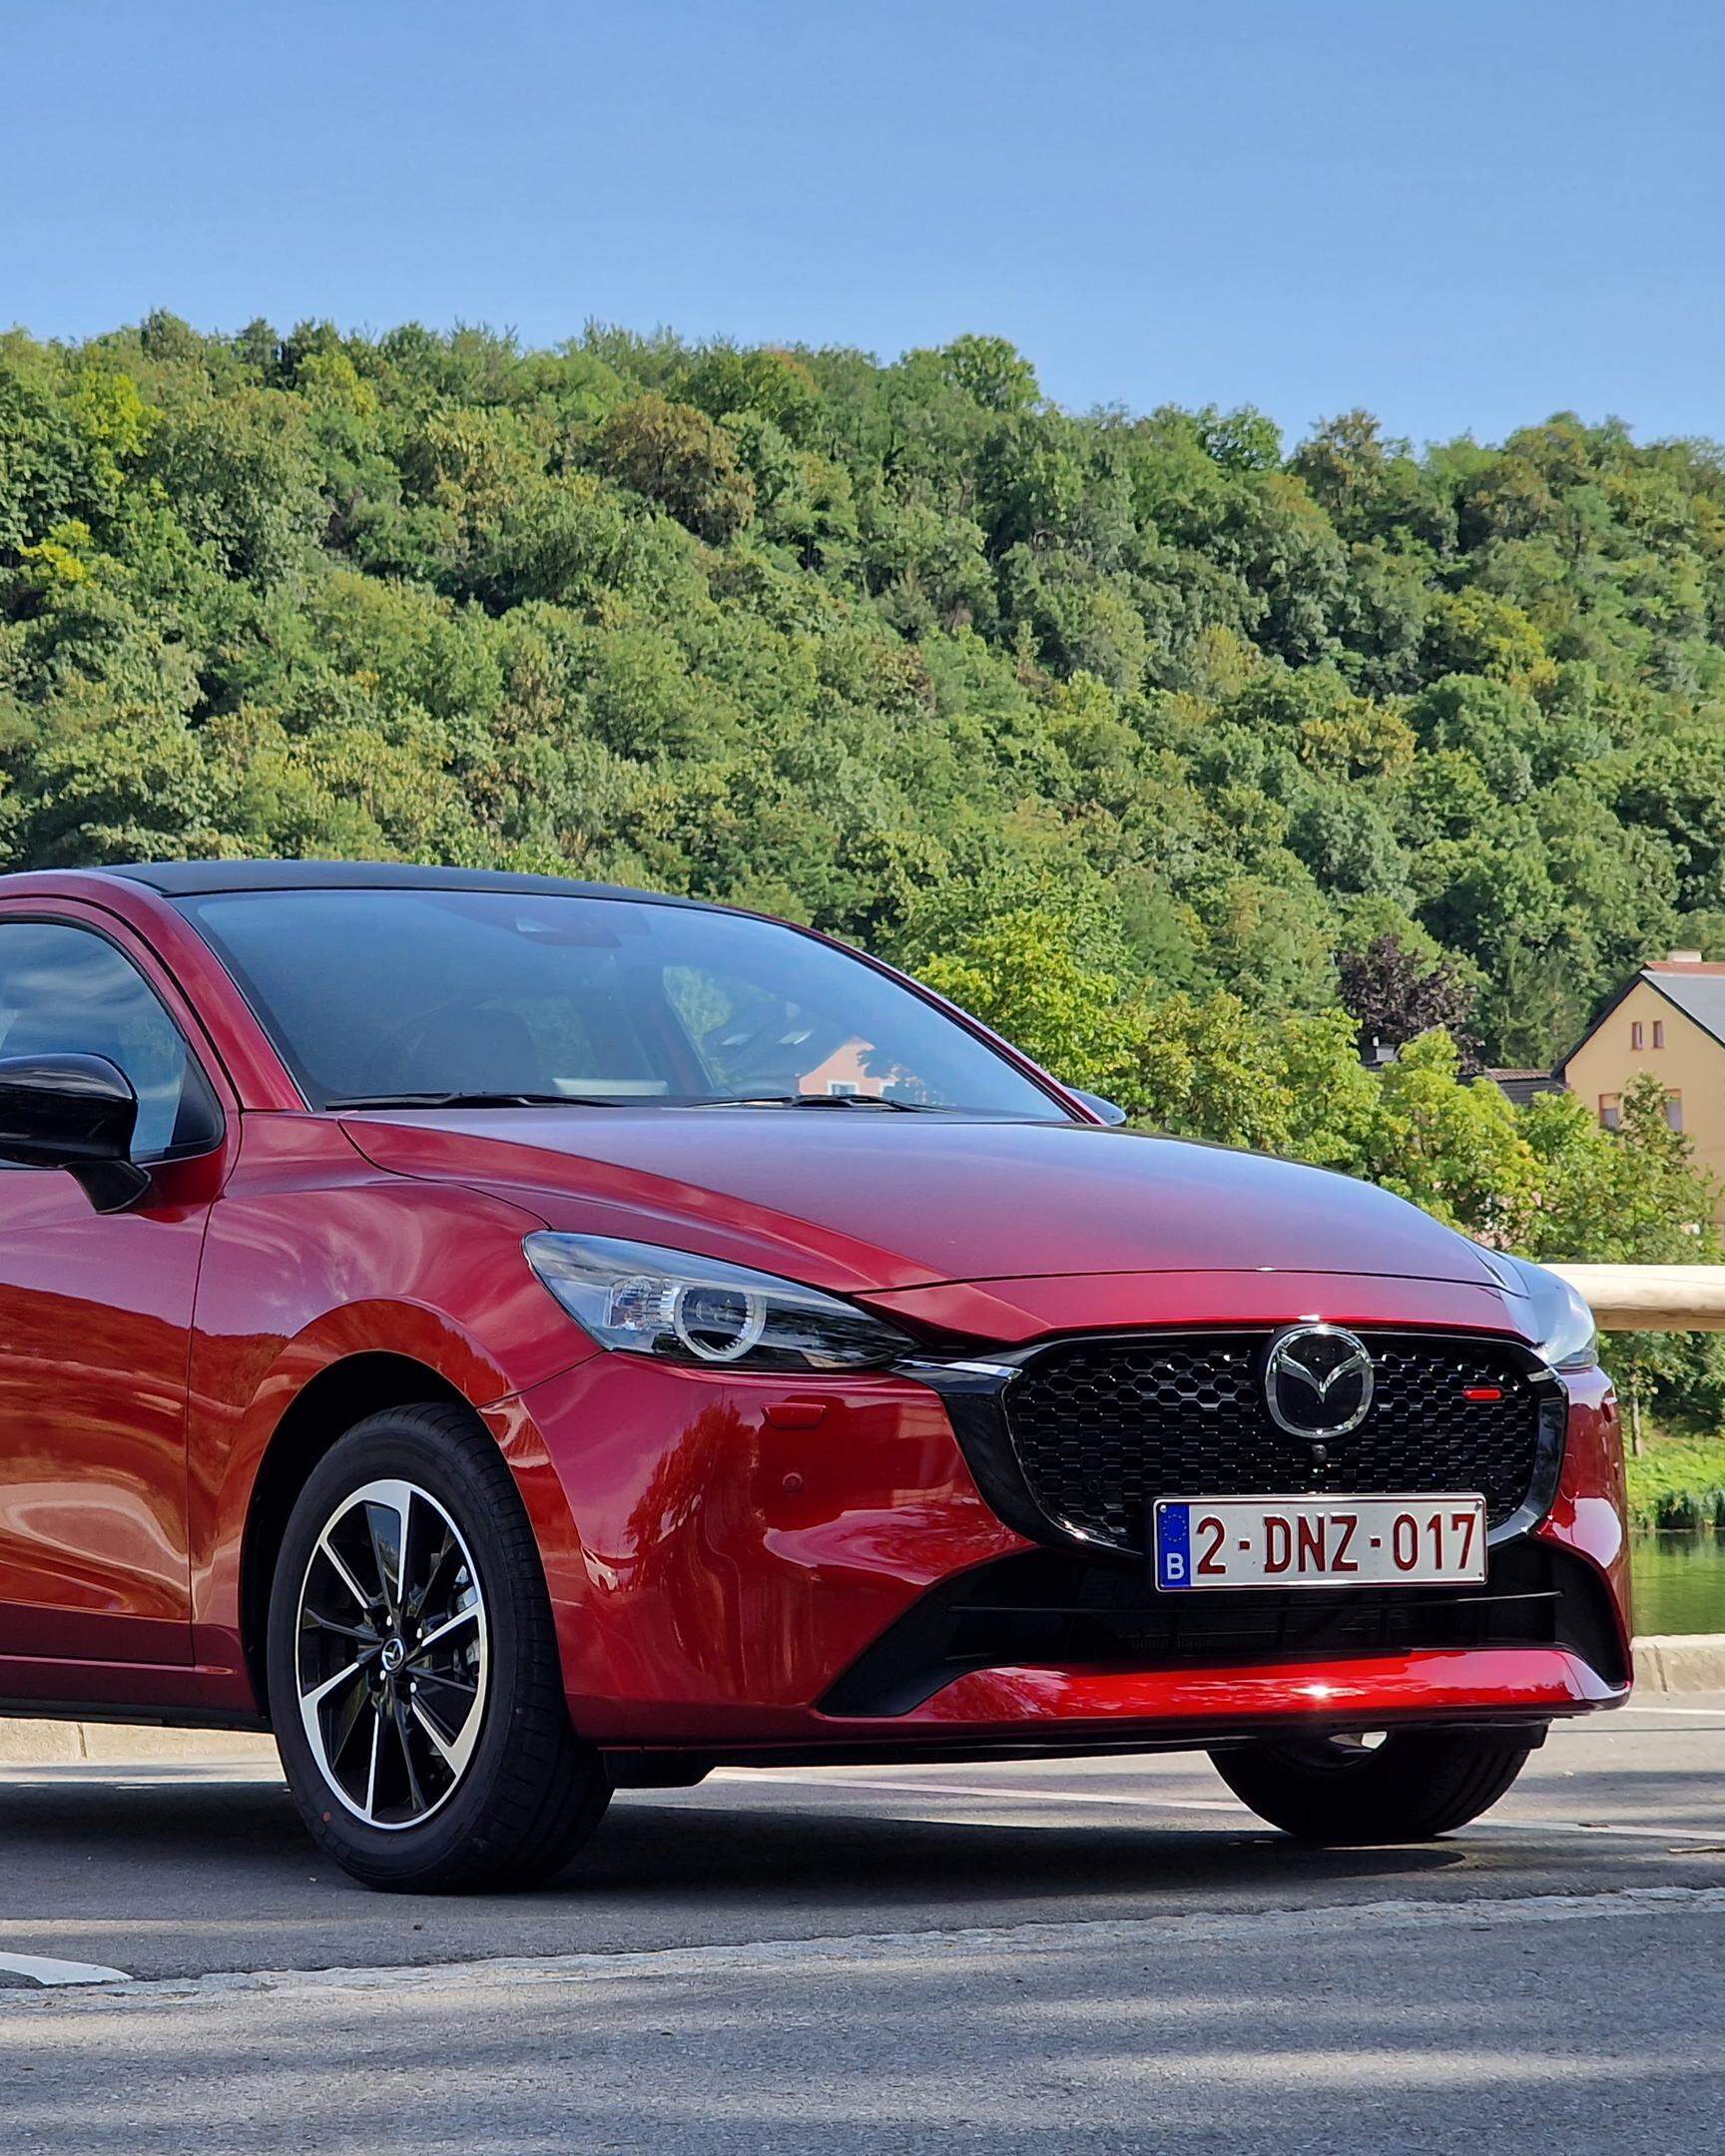 Mazda macht vieles anders - aber auch besser? - FOCUS online